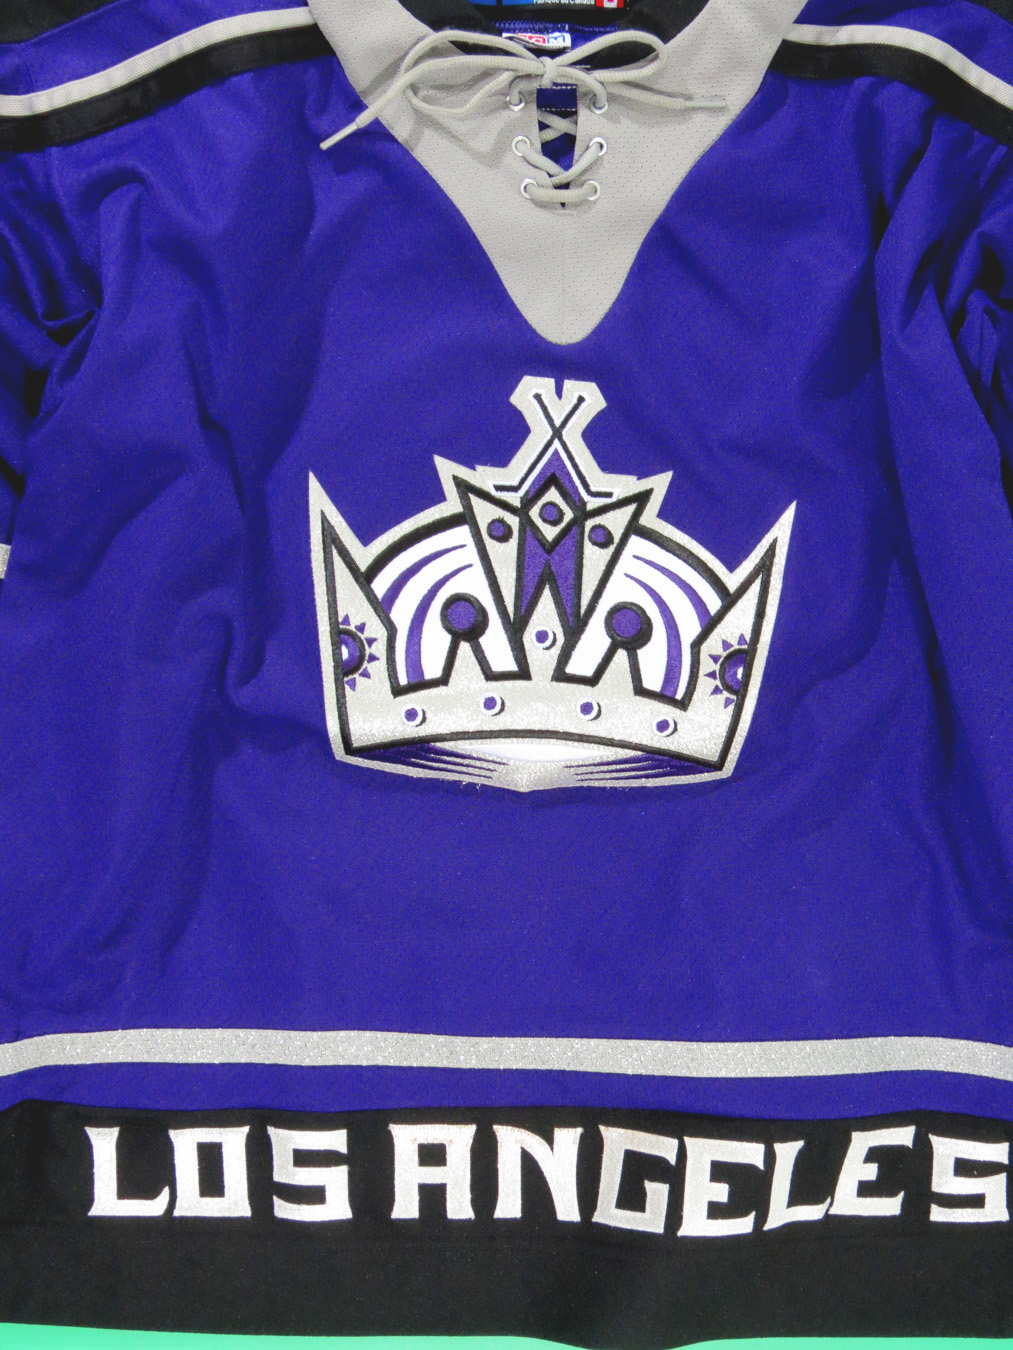 la kings purple jersey